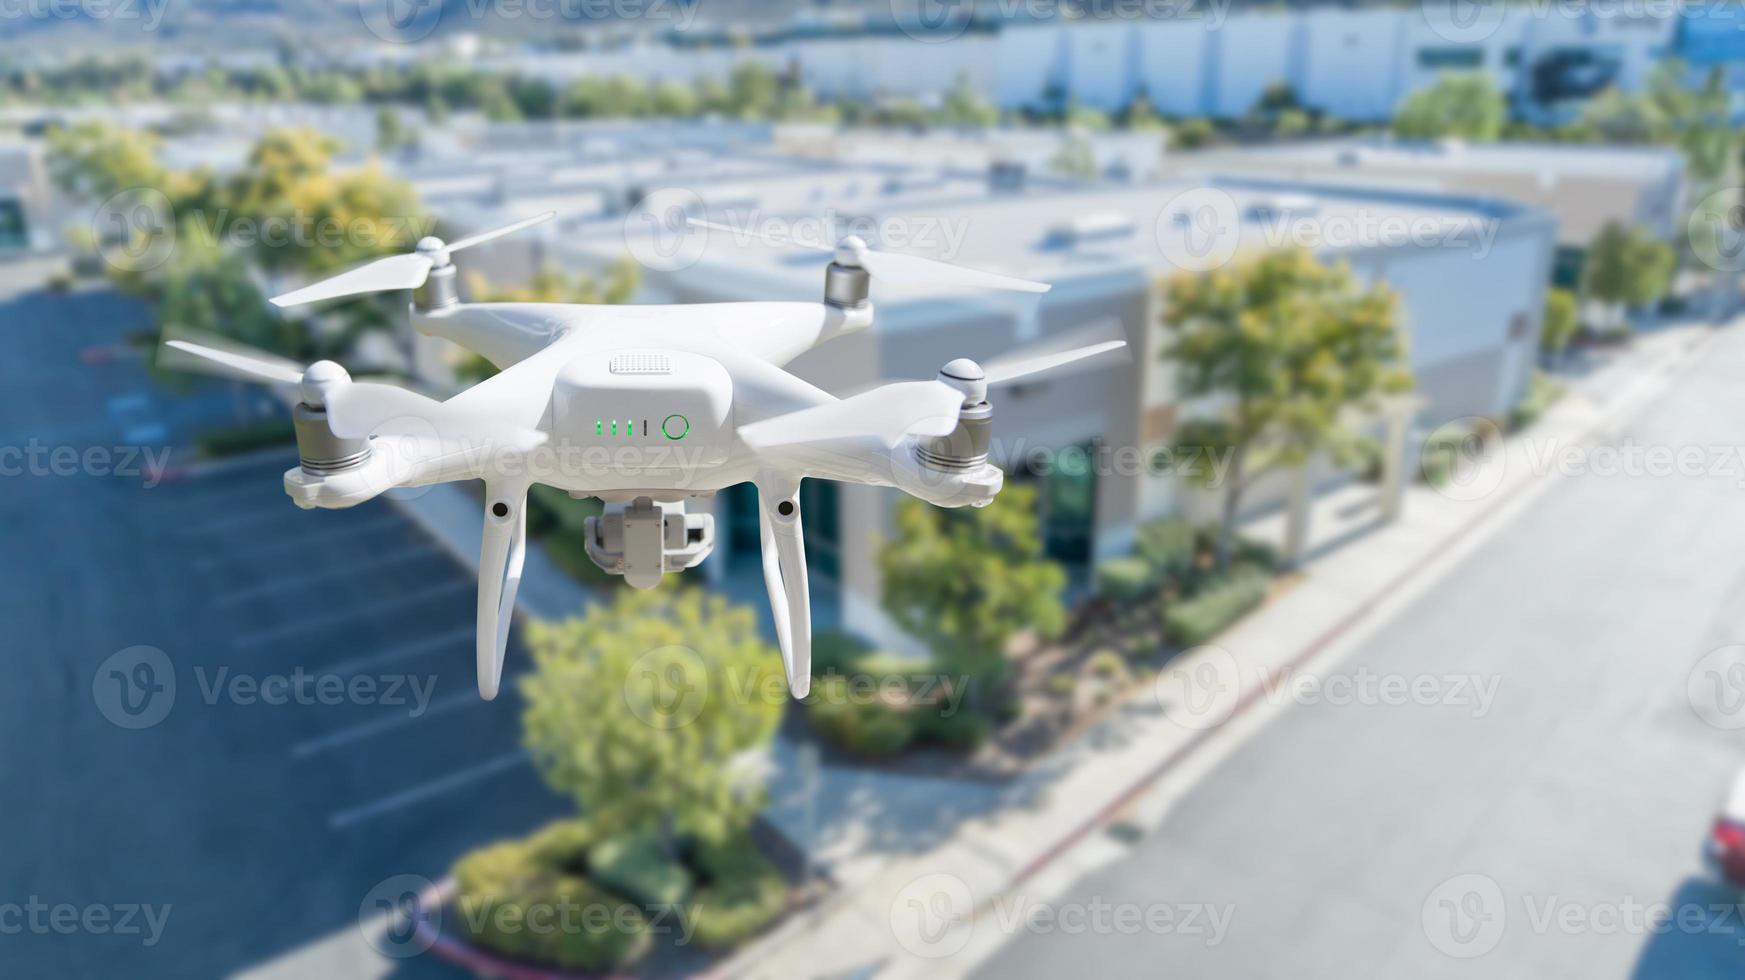 sistema de aviones no tripulados quadcopter drone en el aire cerca del edificio industrial corporativo foto